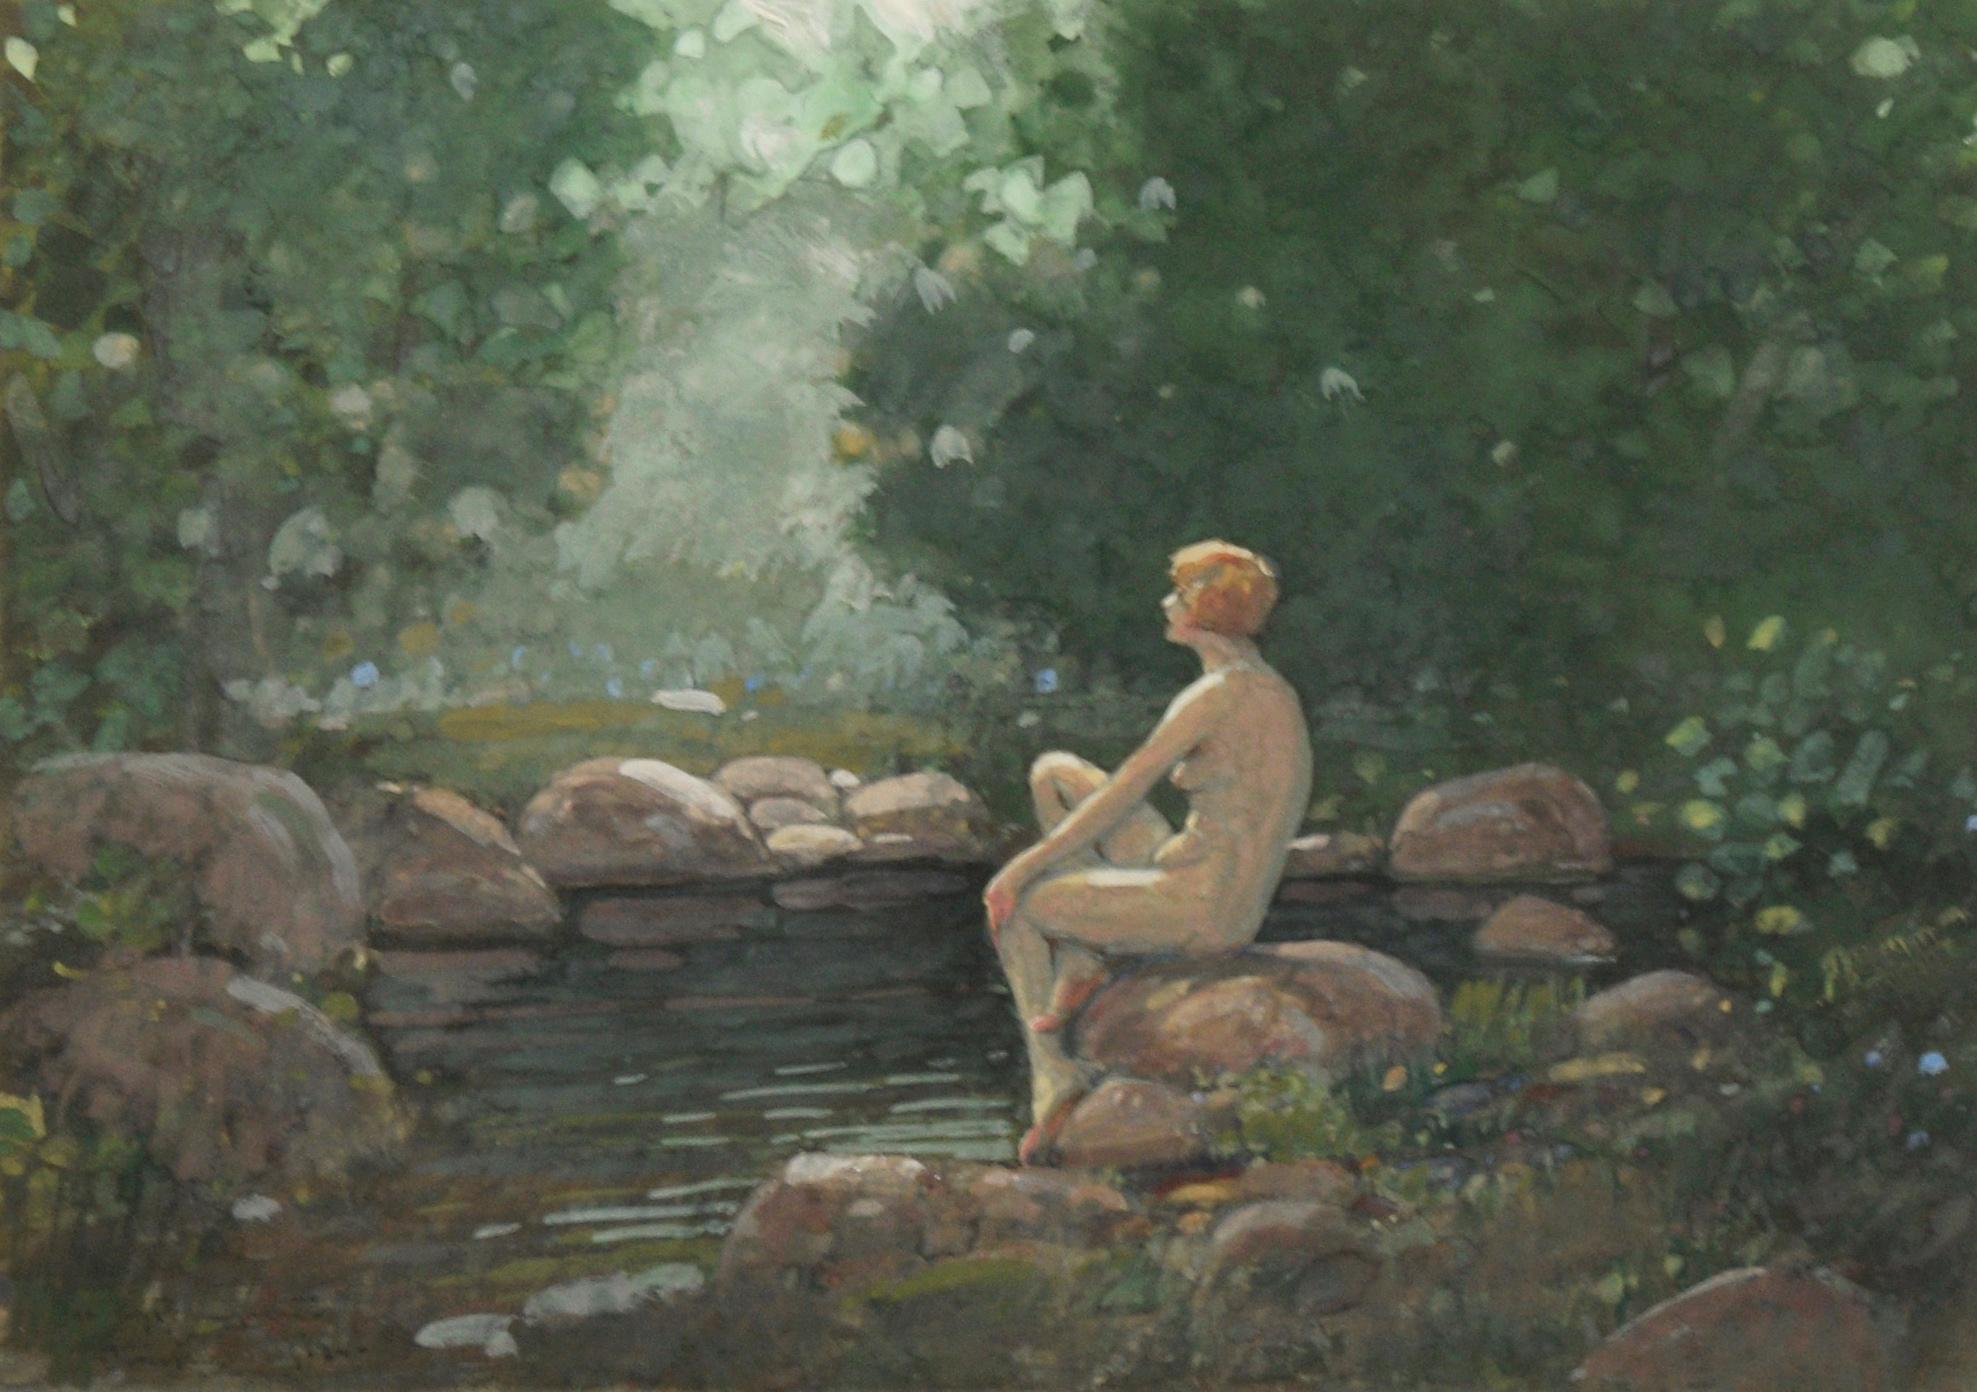 Lady by the Pond, 1920's Art Nouveau Nude Figurative Landscape - Painting by John Jay Baumgartner